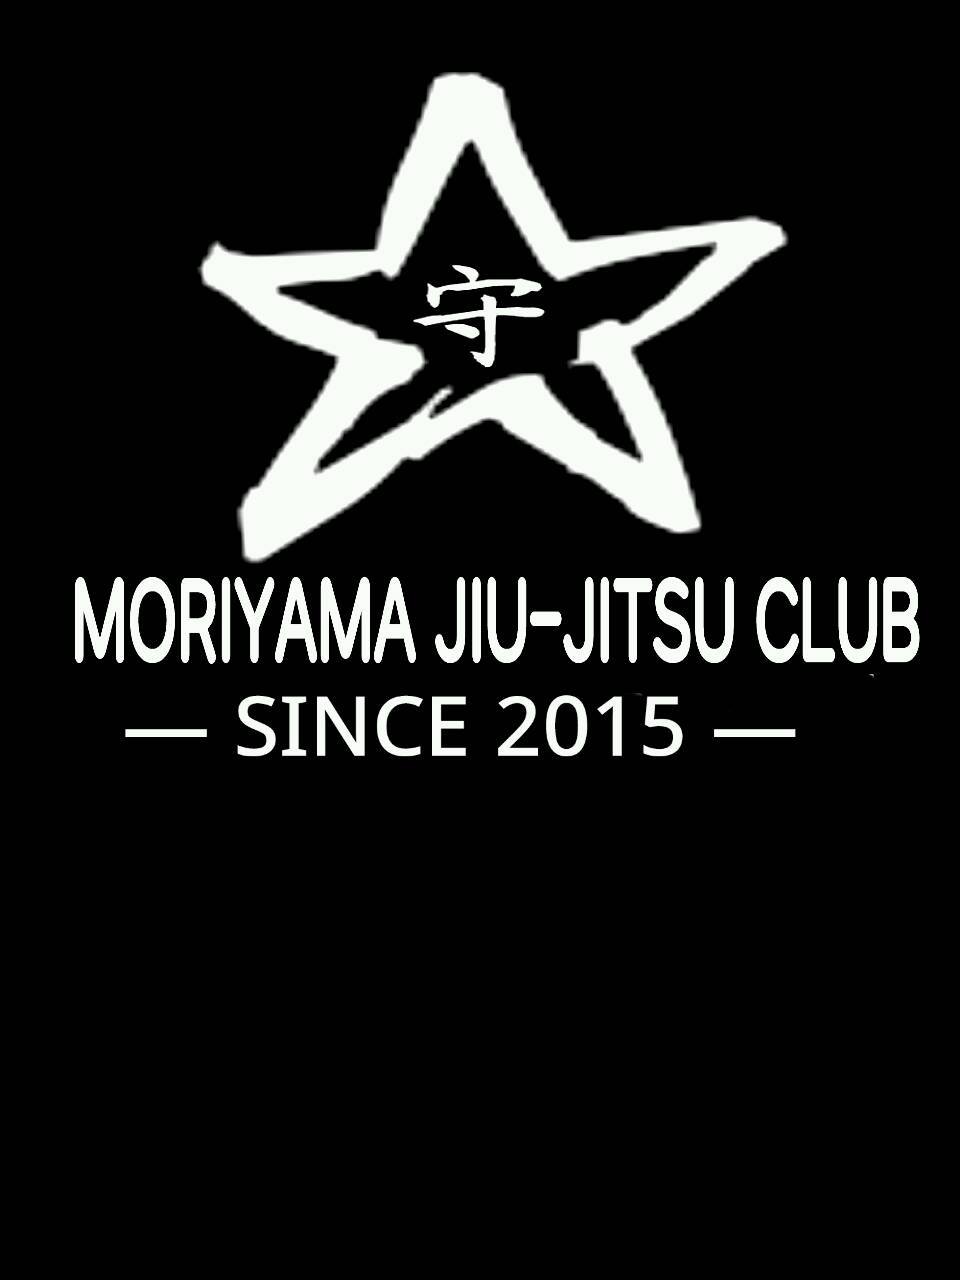 Moriyama Jiu-Jitsu Club